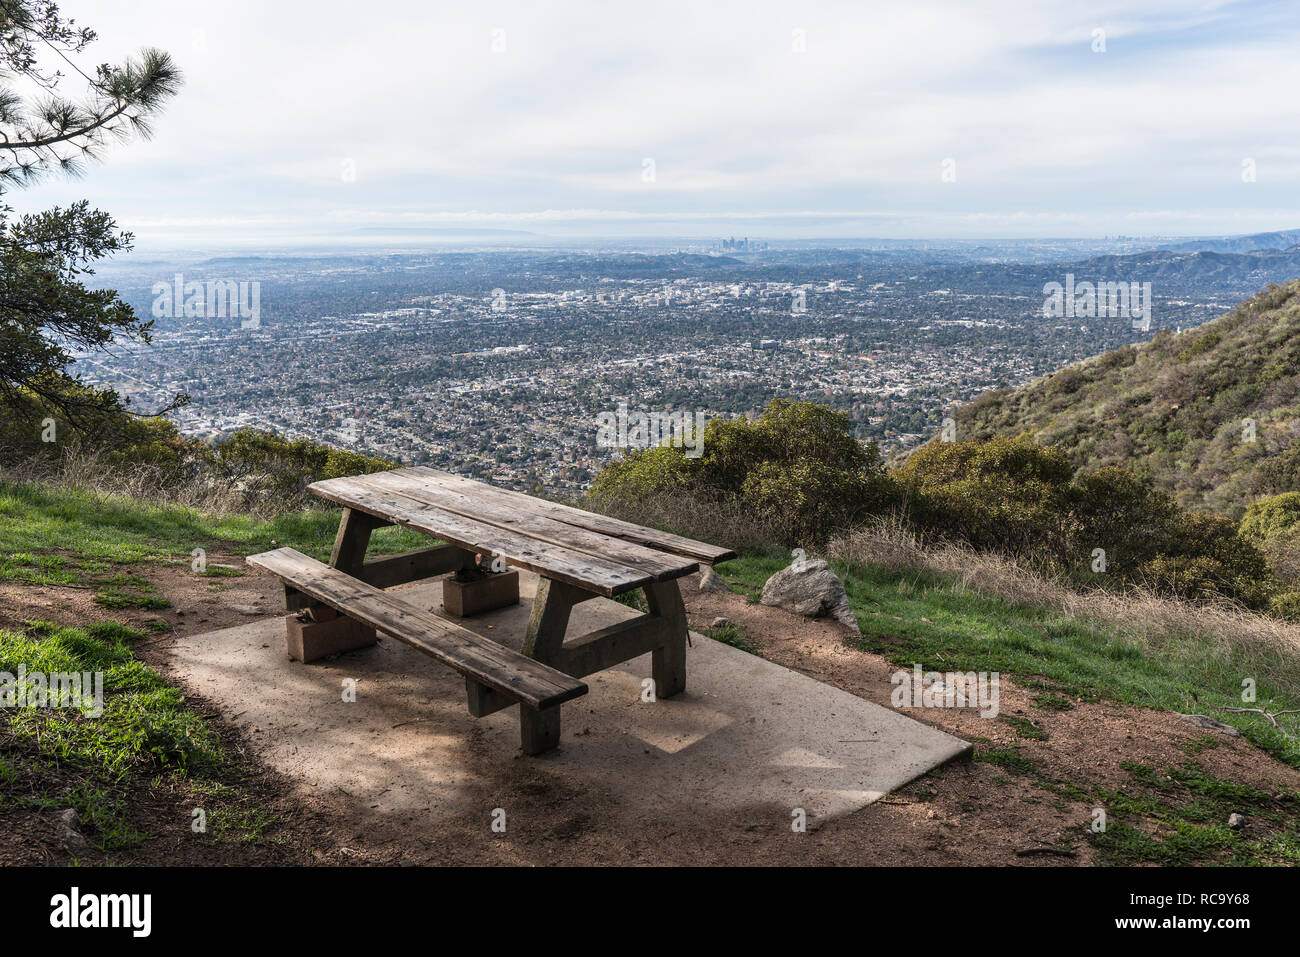 Picknicktisch mit Urban Los Angeles anzeigen. Schuß in San Gabriel Bergen oberhalb von Pasadena und Altadena im malerischen südlichen Kalifornien genommen. Stockfoto